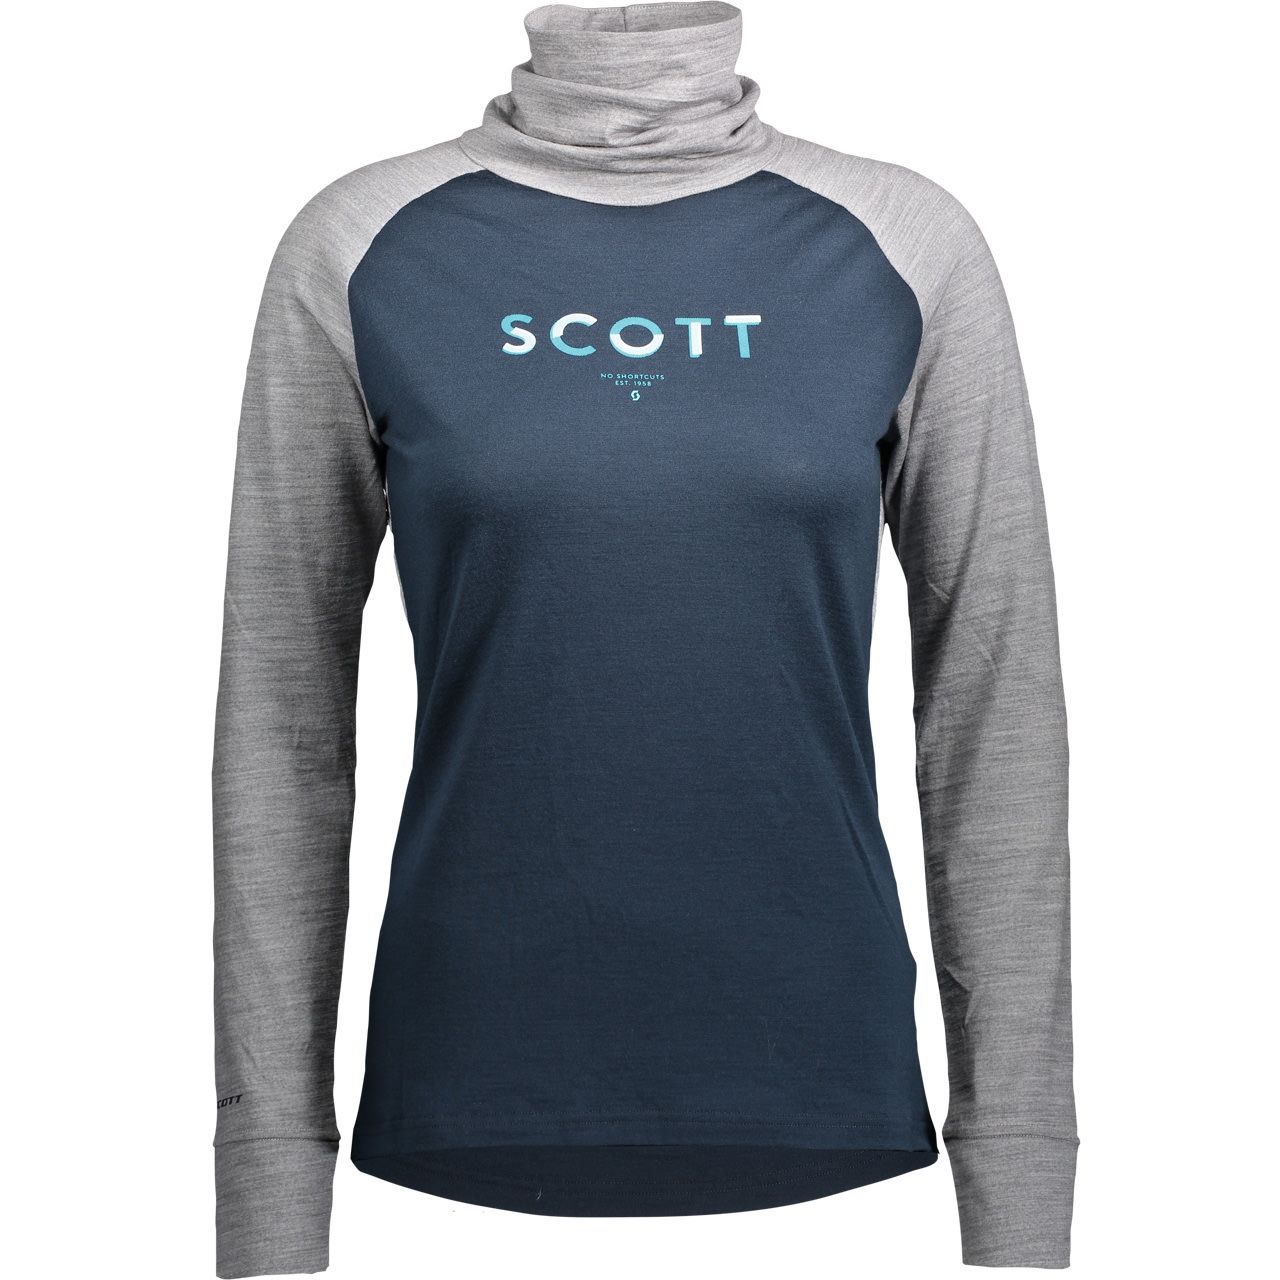 Scott Damen High Neck Shirt DEFINED MERINO light grey melange/dark blue von Scott